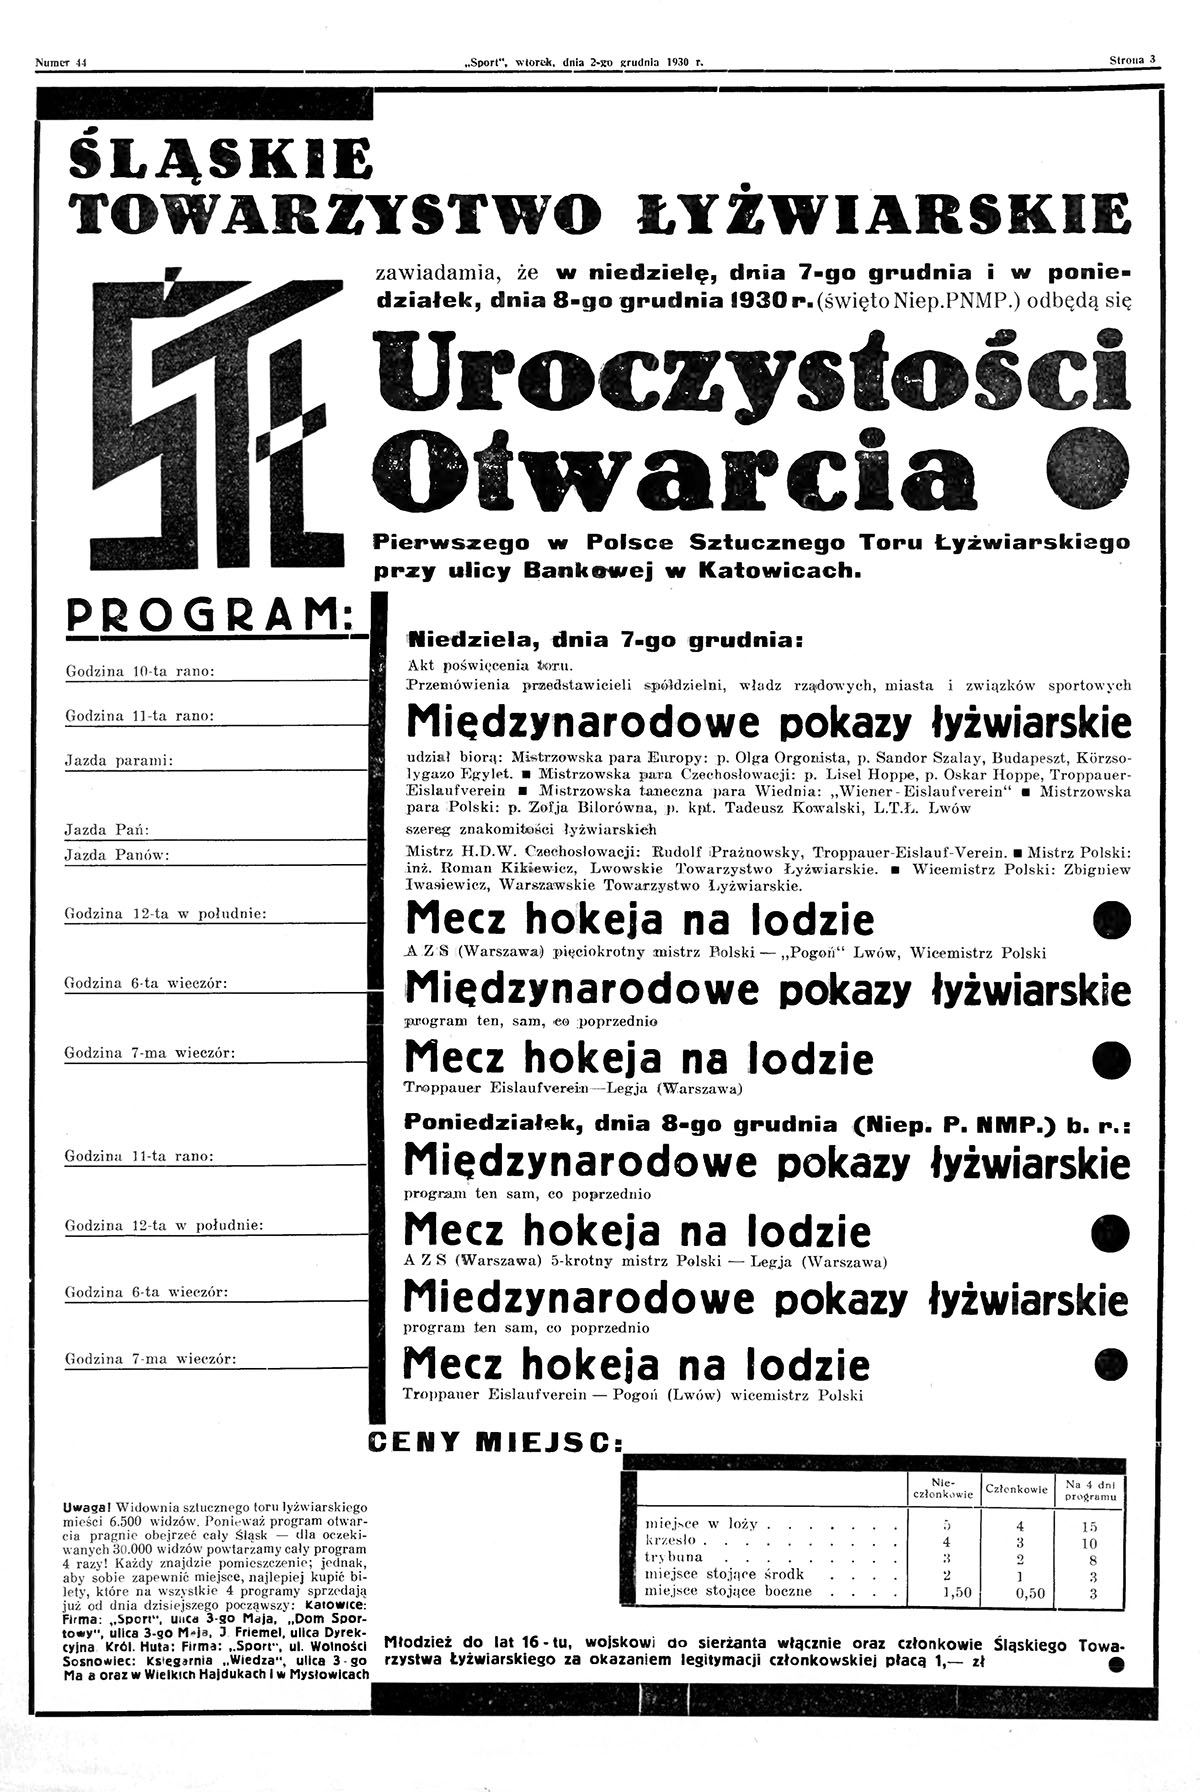 Program uroczystości otwarcia pierwszego w Polsce sztucznego toru łyżwiarskiego opublikowany w piśmie „Sport” (nr 44/1930). Źródło: Jagiellońska Biblioteka Cyfrowa